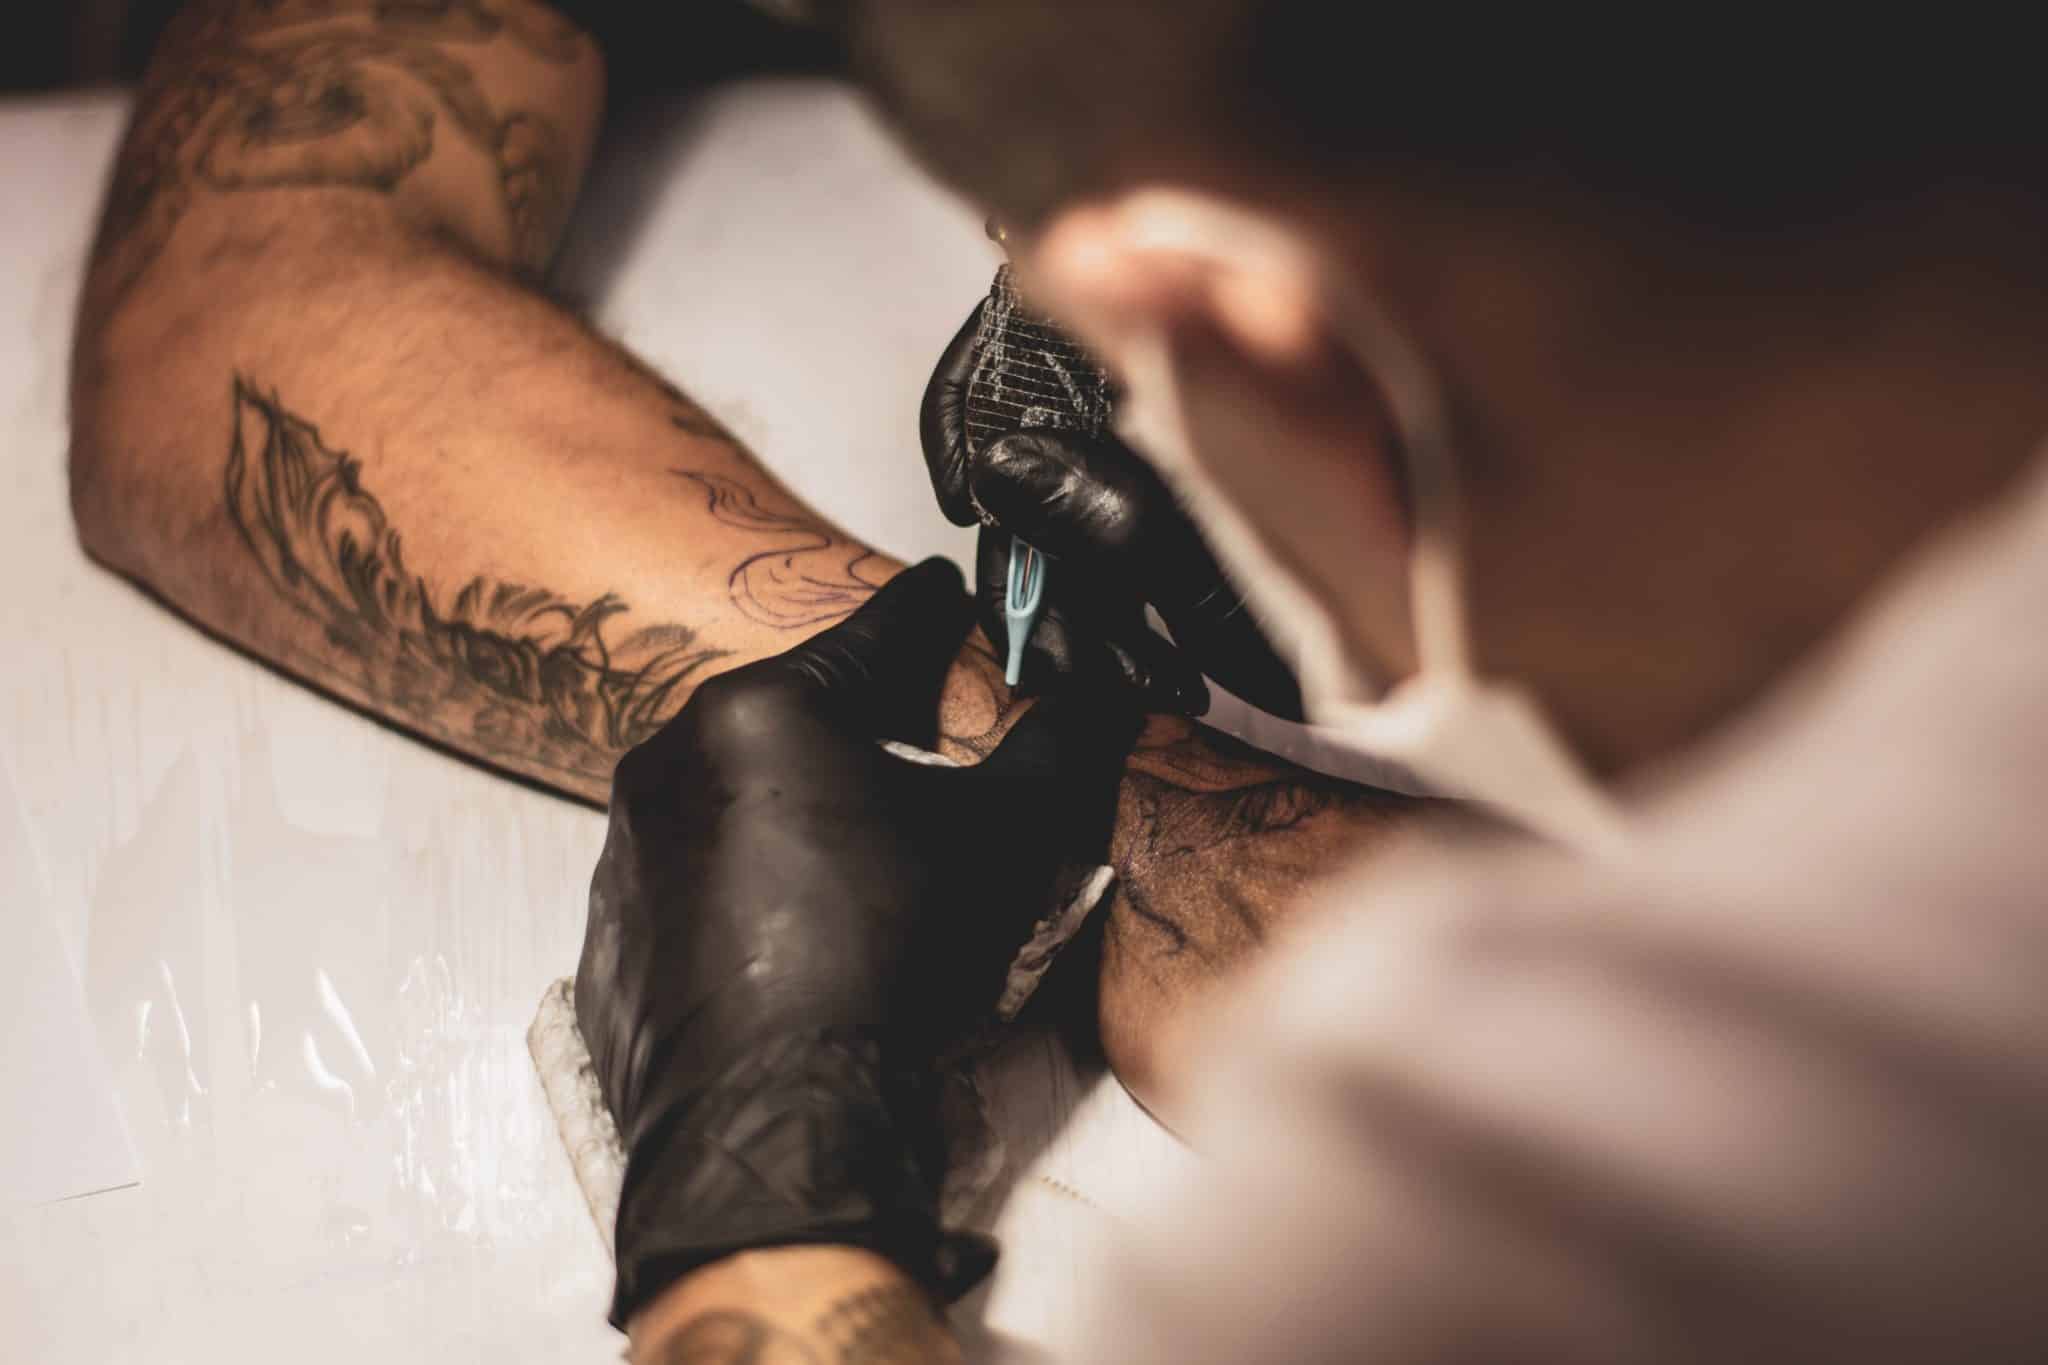 Tattoo Artist Making Koi Fish Tattoo